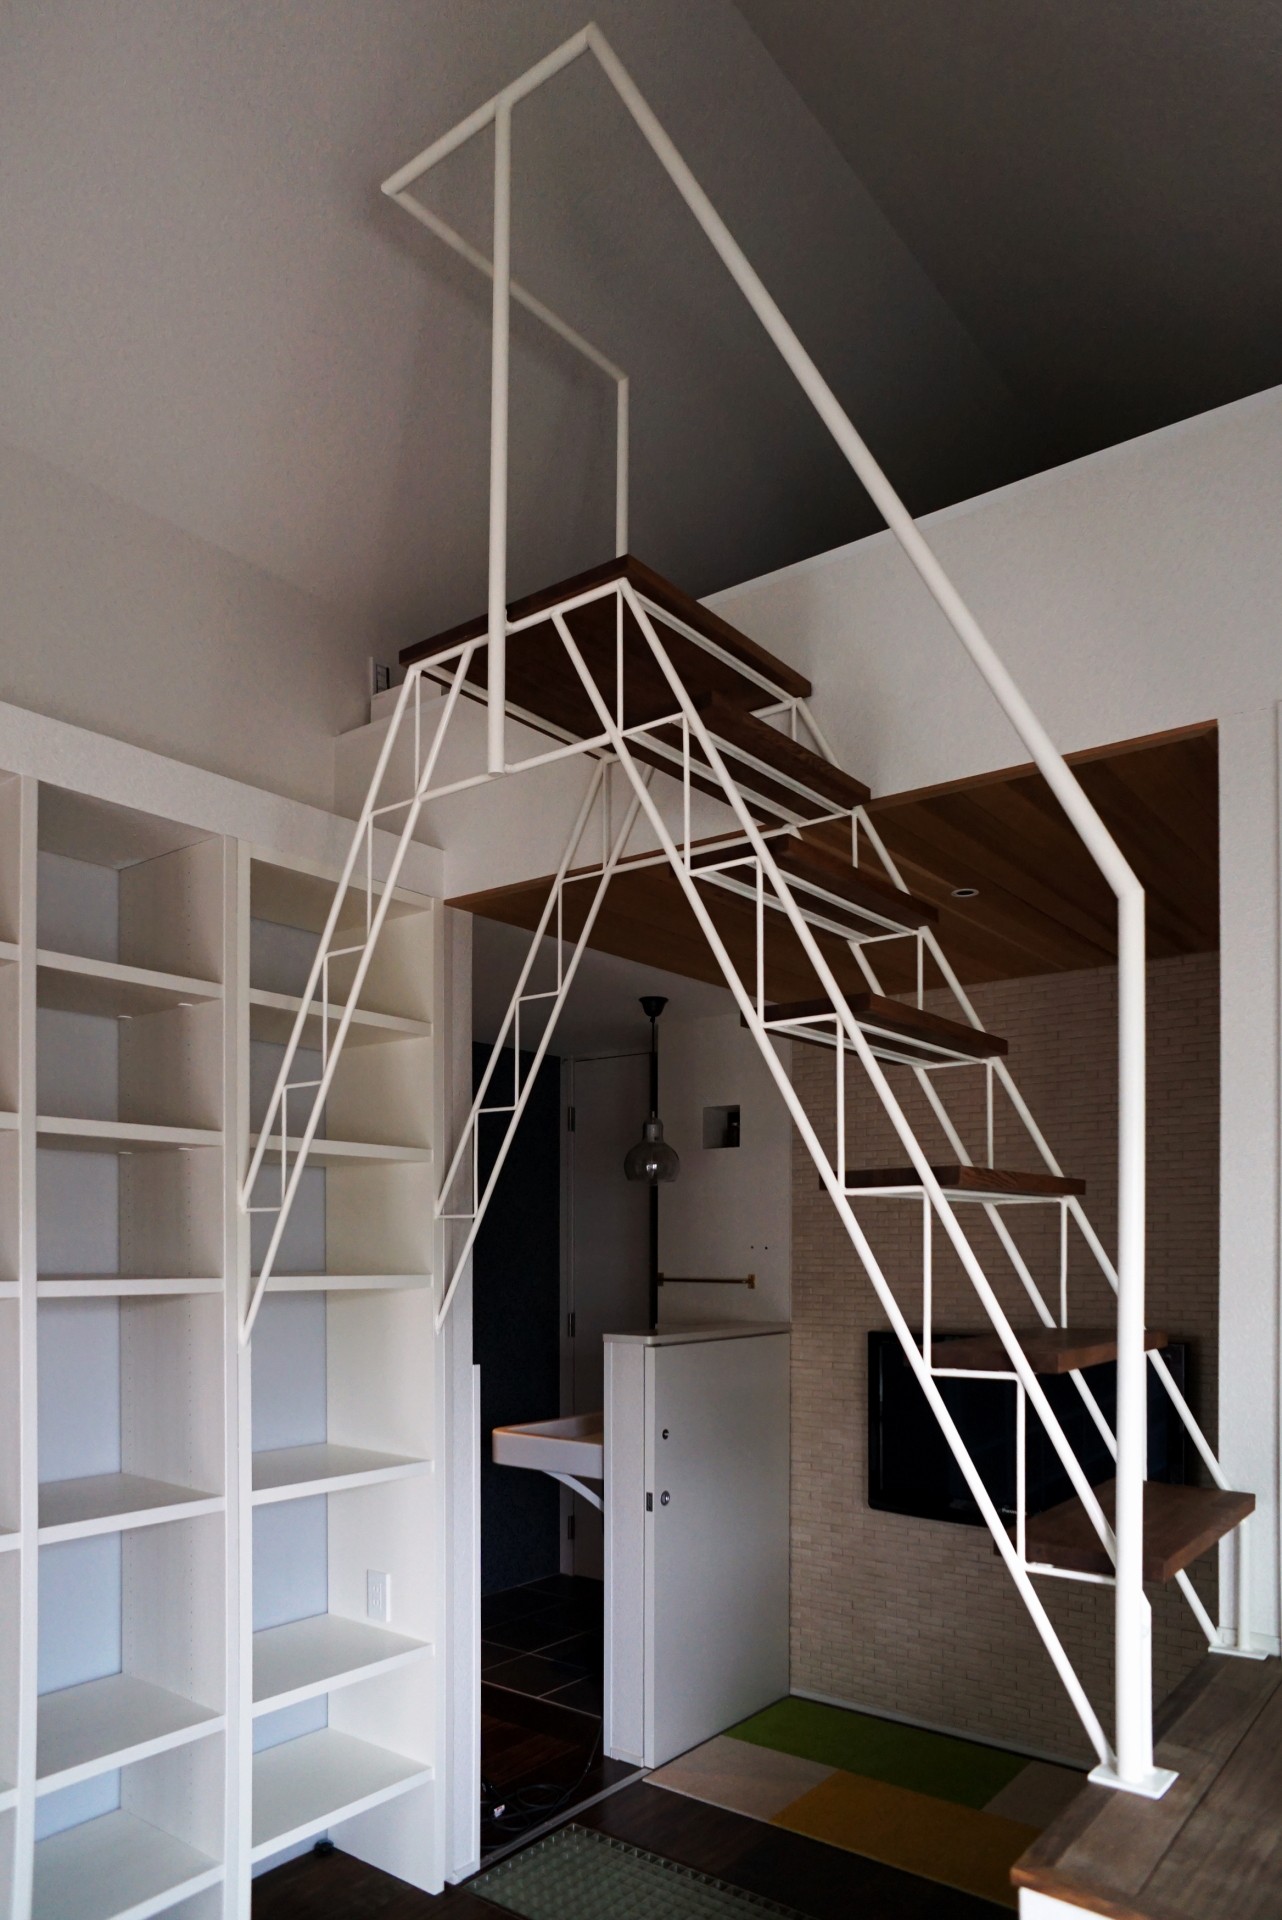 1枚目 ロフト階段 ロフトへのトラス階段をつくる計画 その他事例 Suvaco スバコ